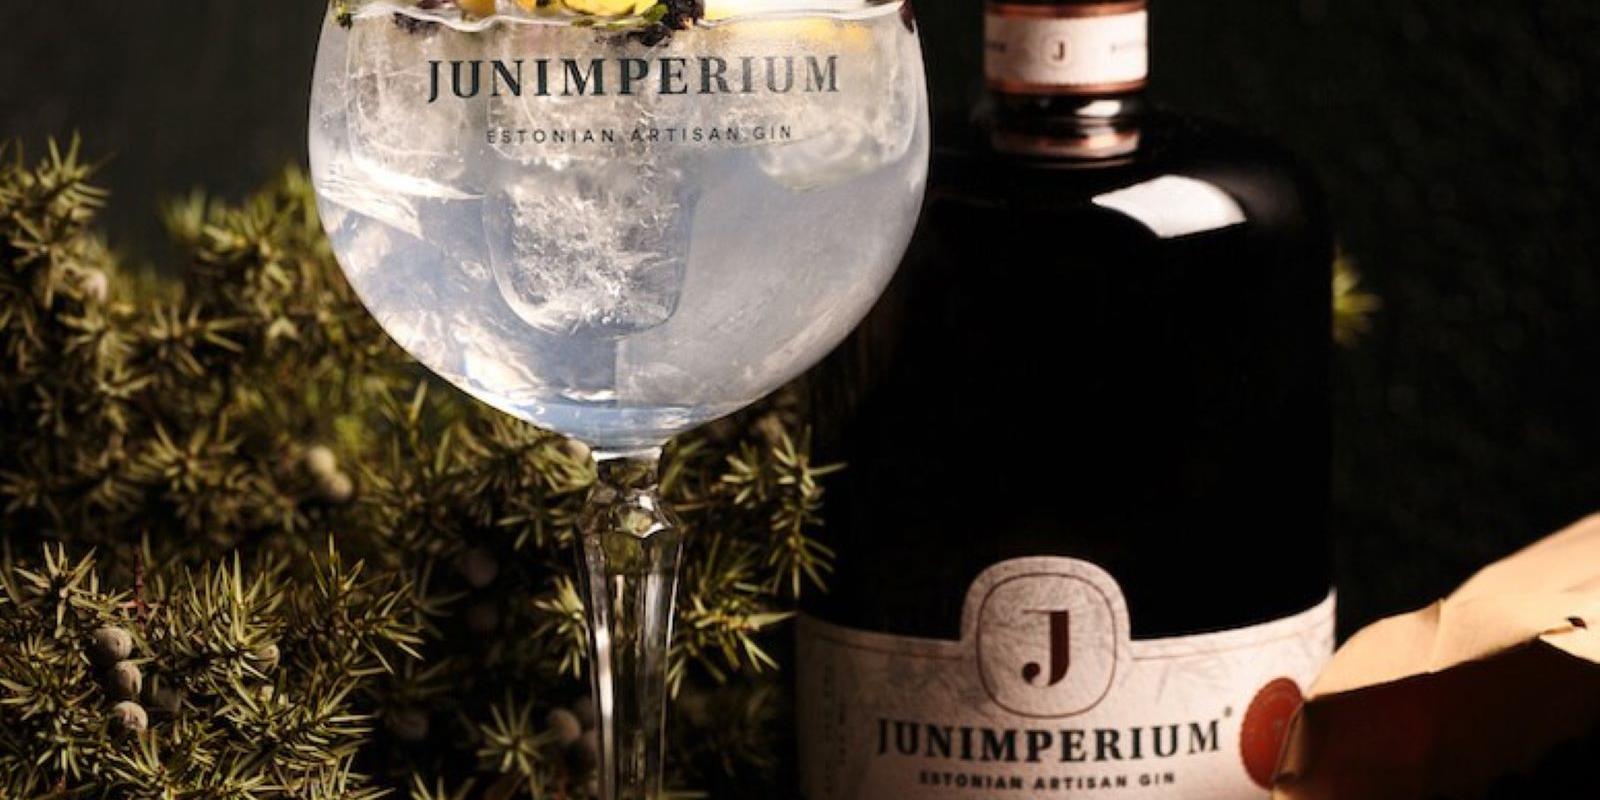 Ginbrennerei Junimperium